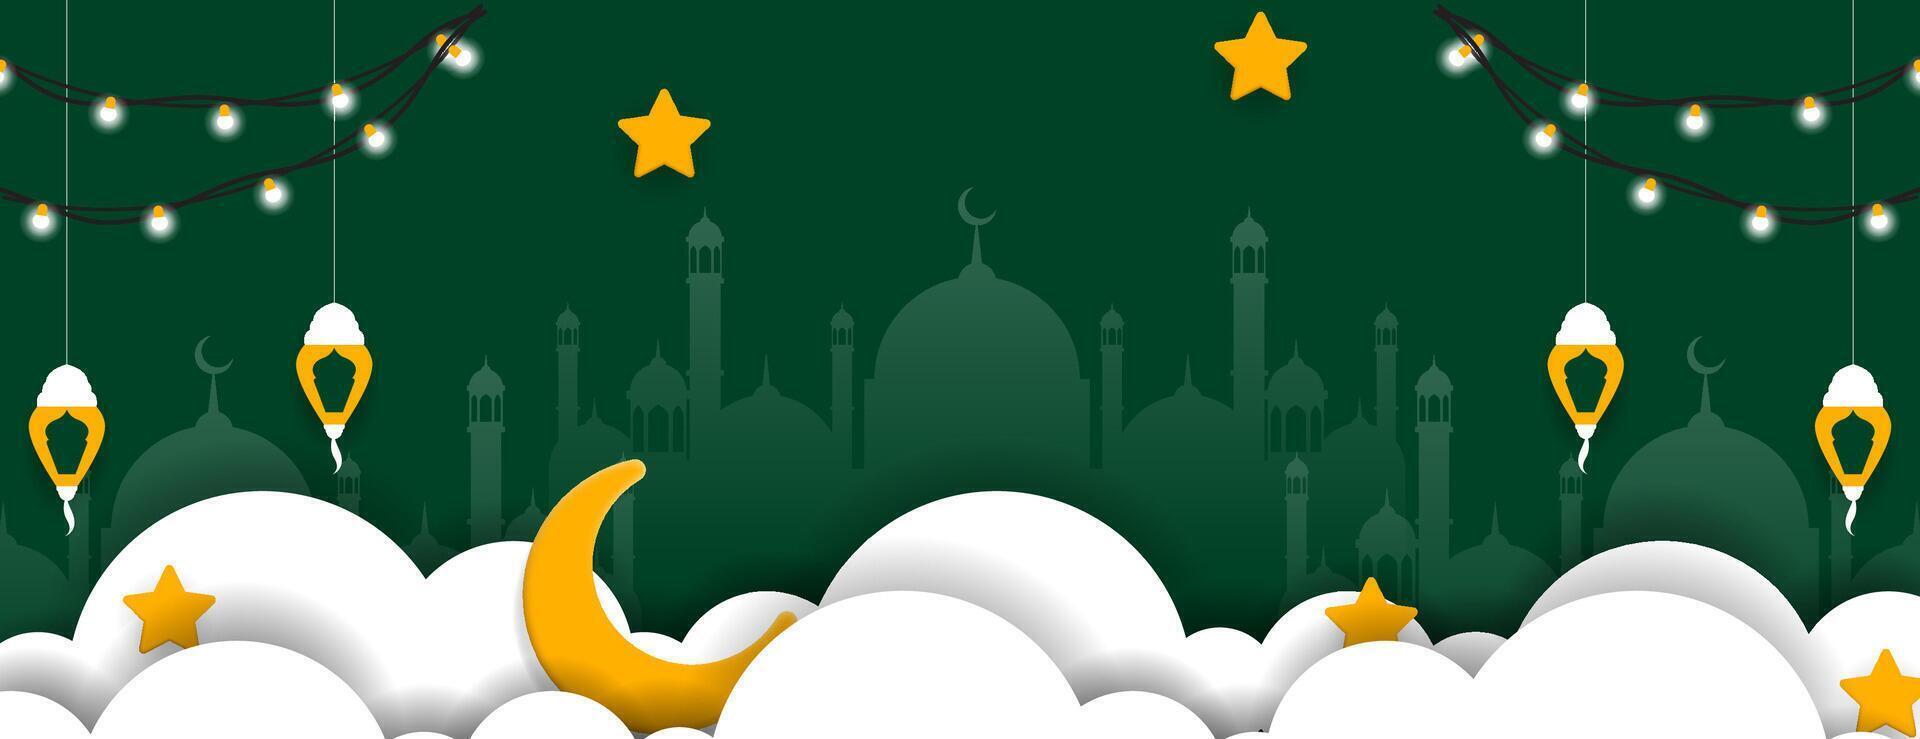 islamisch Hintergrund mit Laterne, Moschee, Wolke, Halbmond und Sterne im Grün, Weiß und Gold Farbe. Vektor Illustration